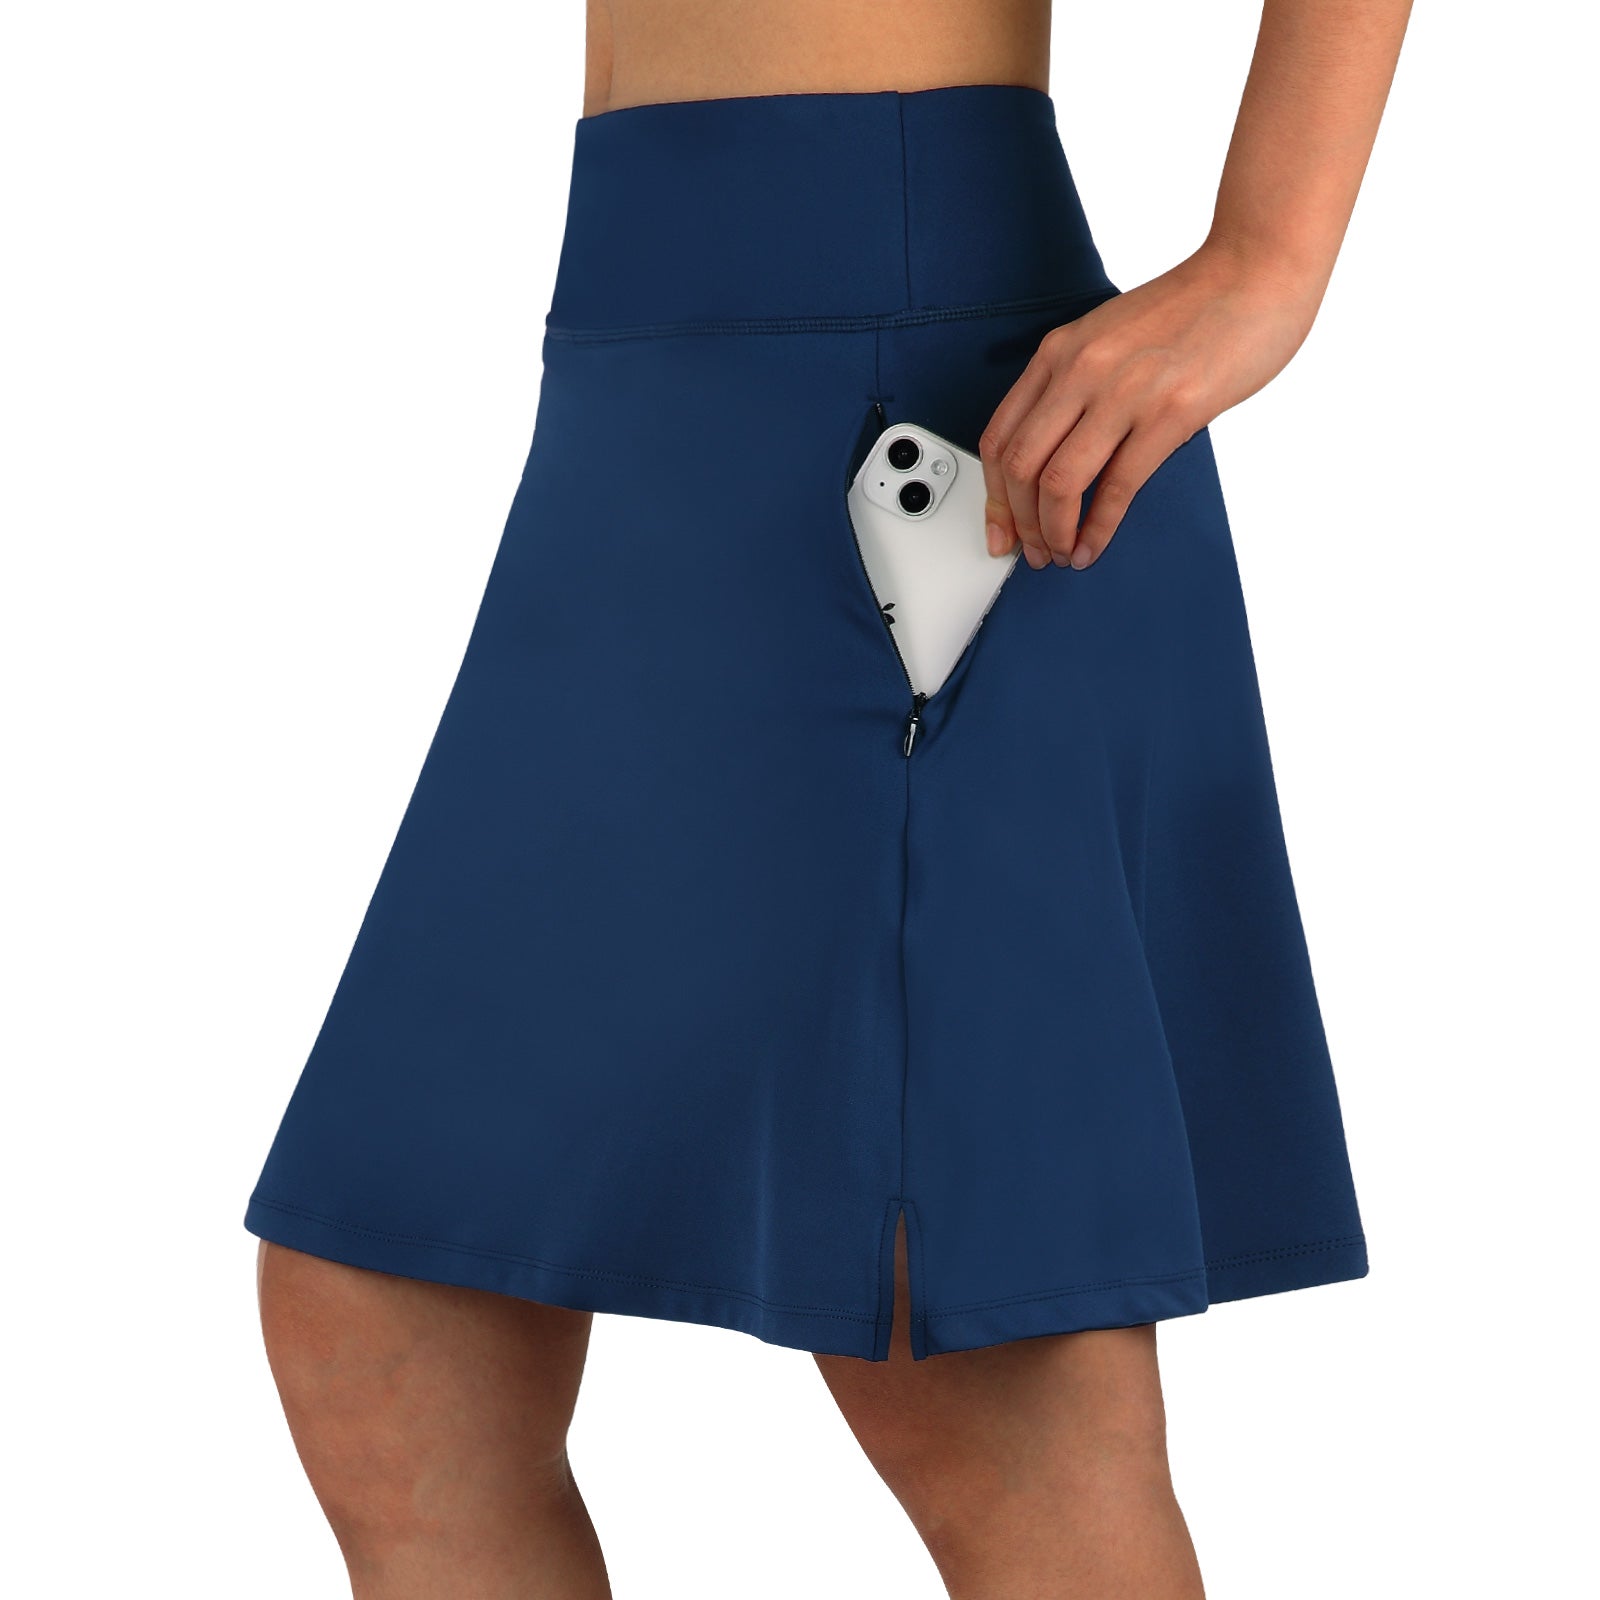 Skirted Legging For Women, Yoga Legging With Skirts Women Tennis Leggings  Clothes Pockets